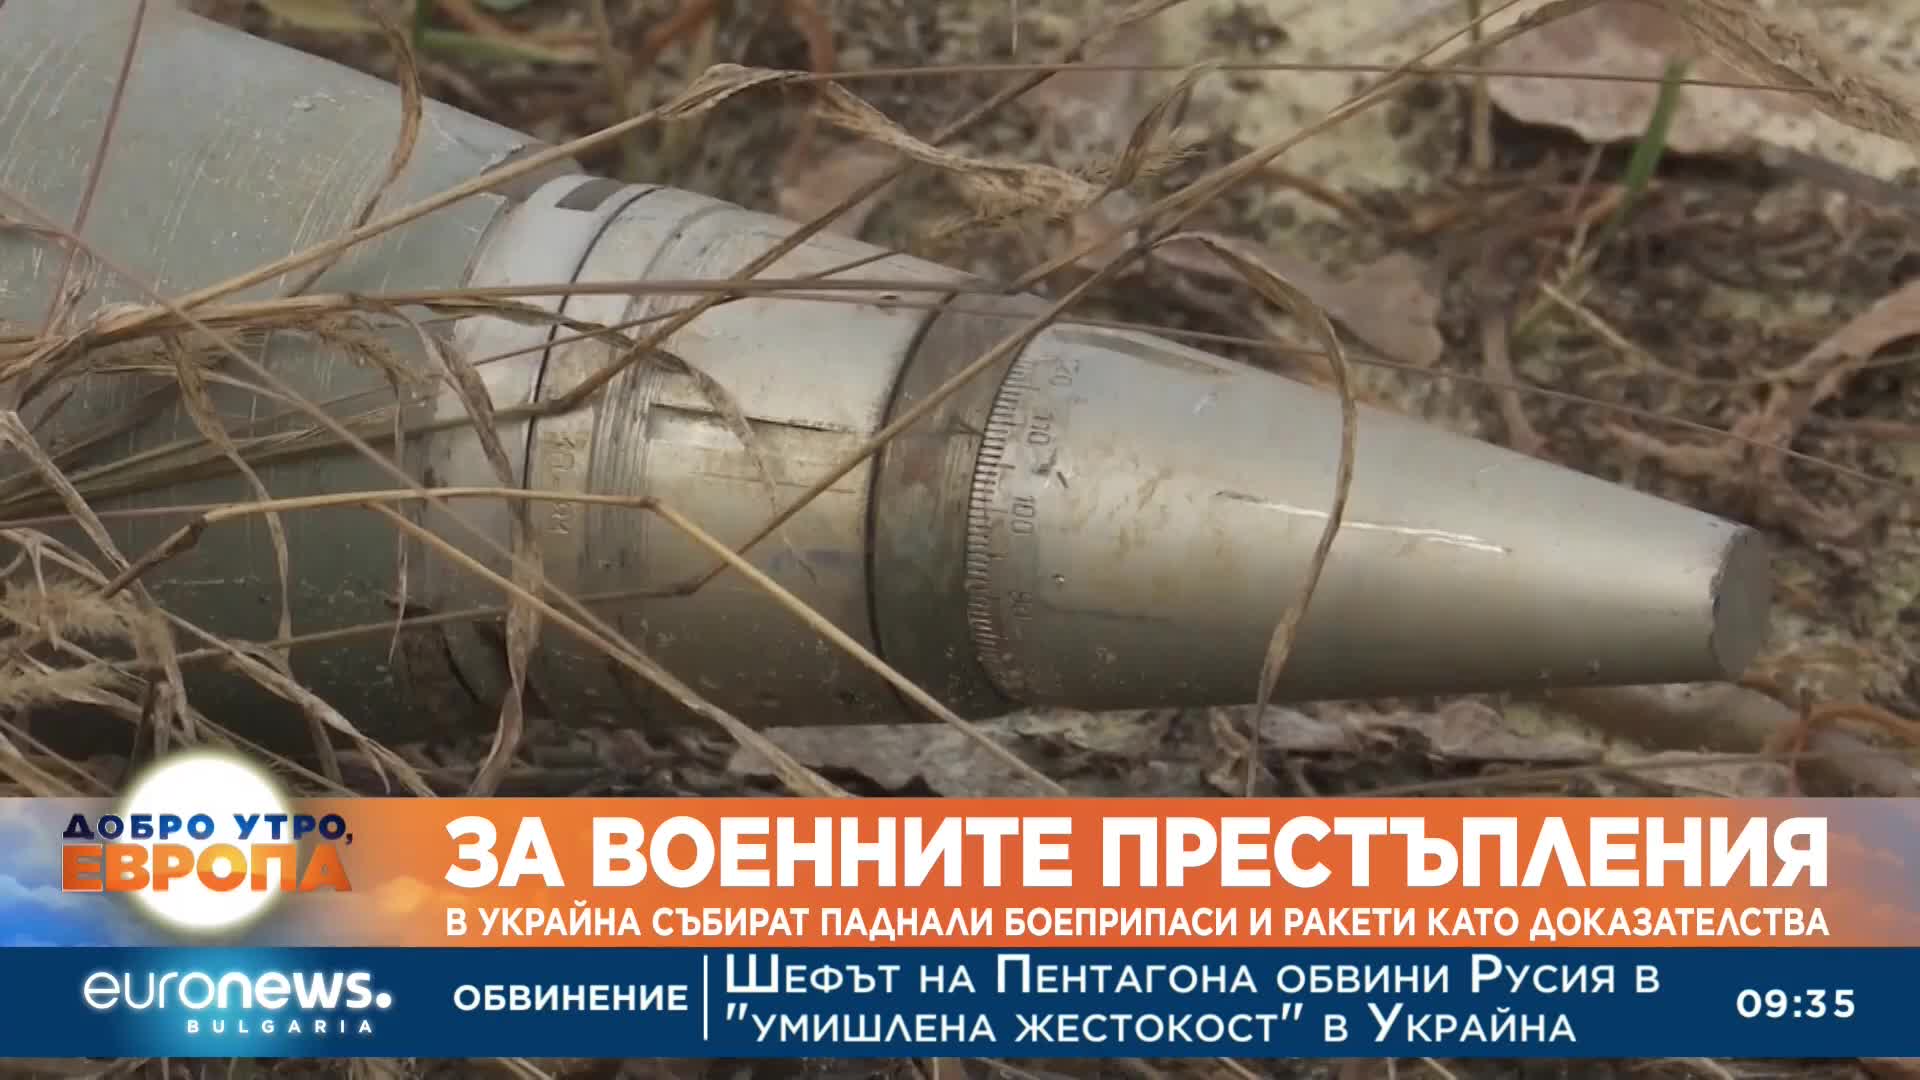 В Украйна събират паднали боеприпаси и ракети като доказателства за руски военни престъпления